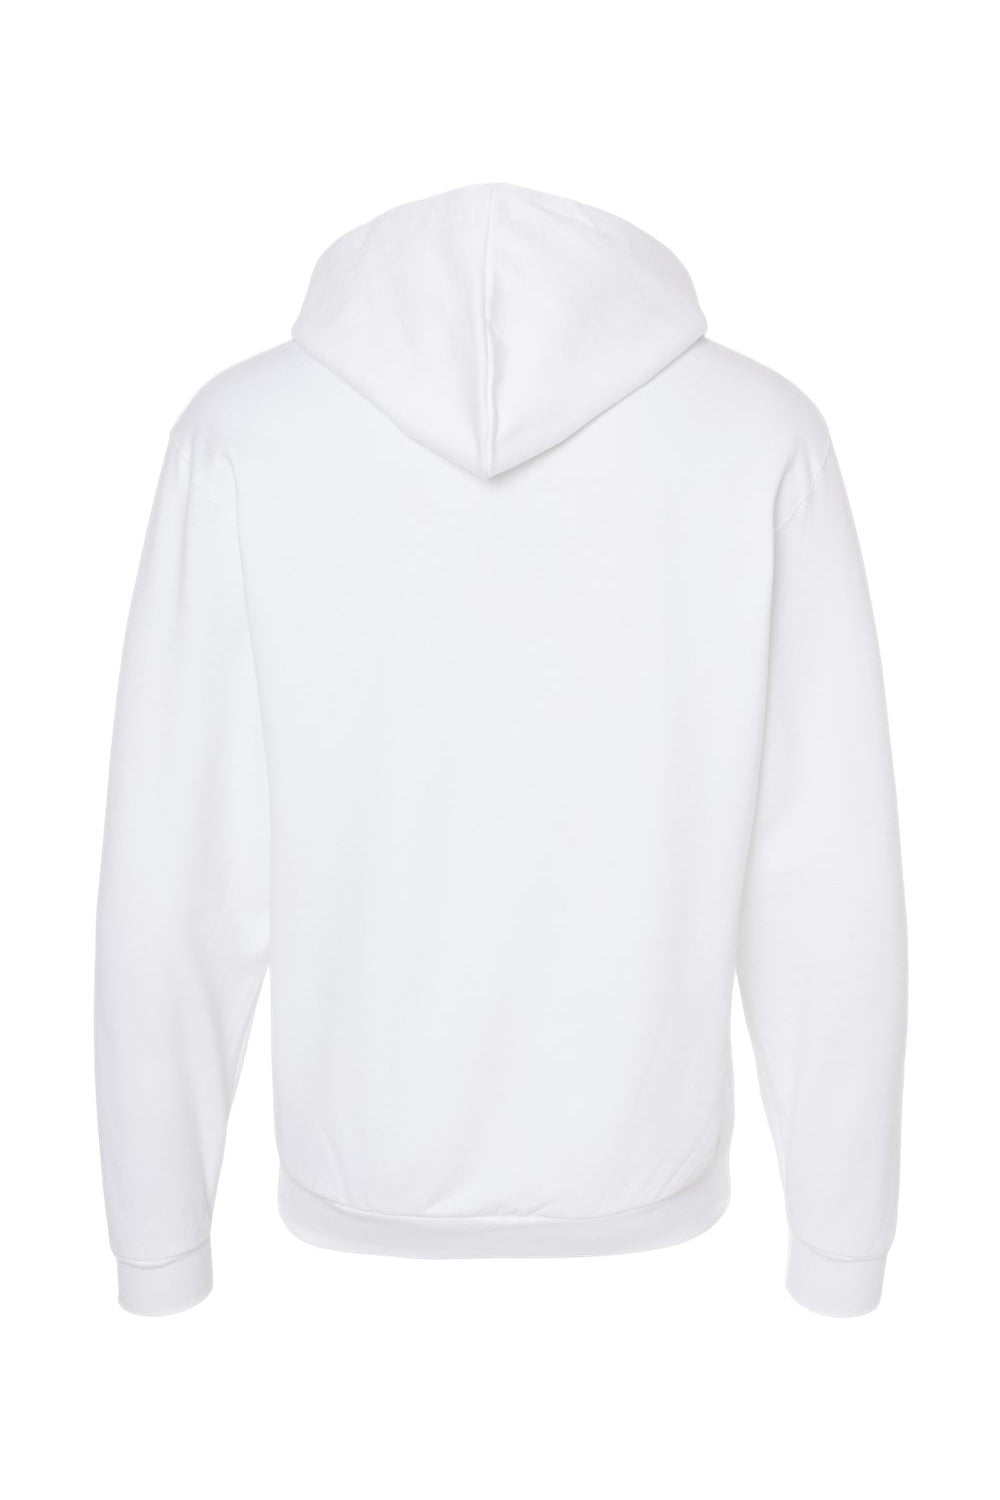 Tultex 331 Mens Full Zip Hooded Sweatshirt Hoodie White Flat Back